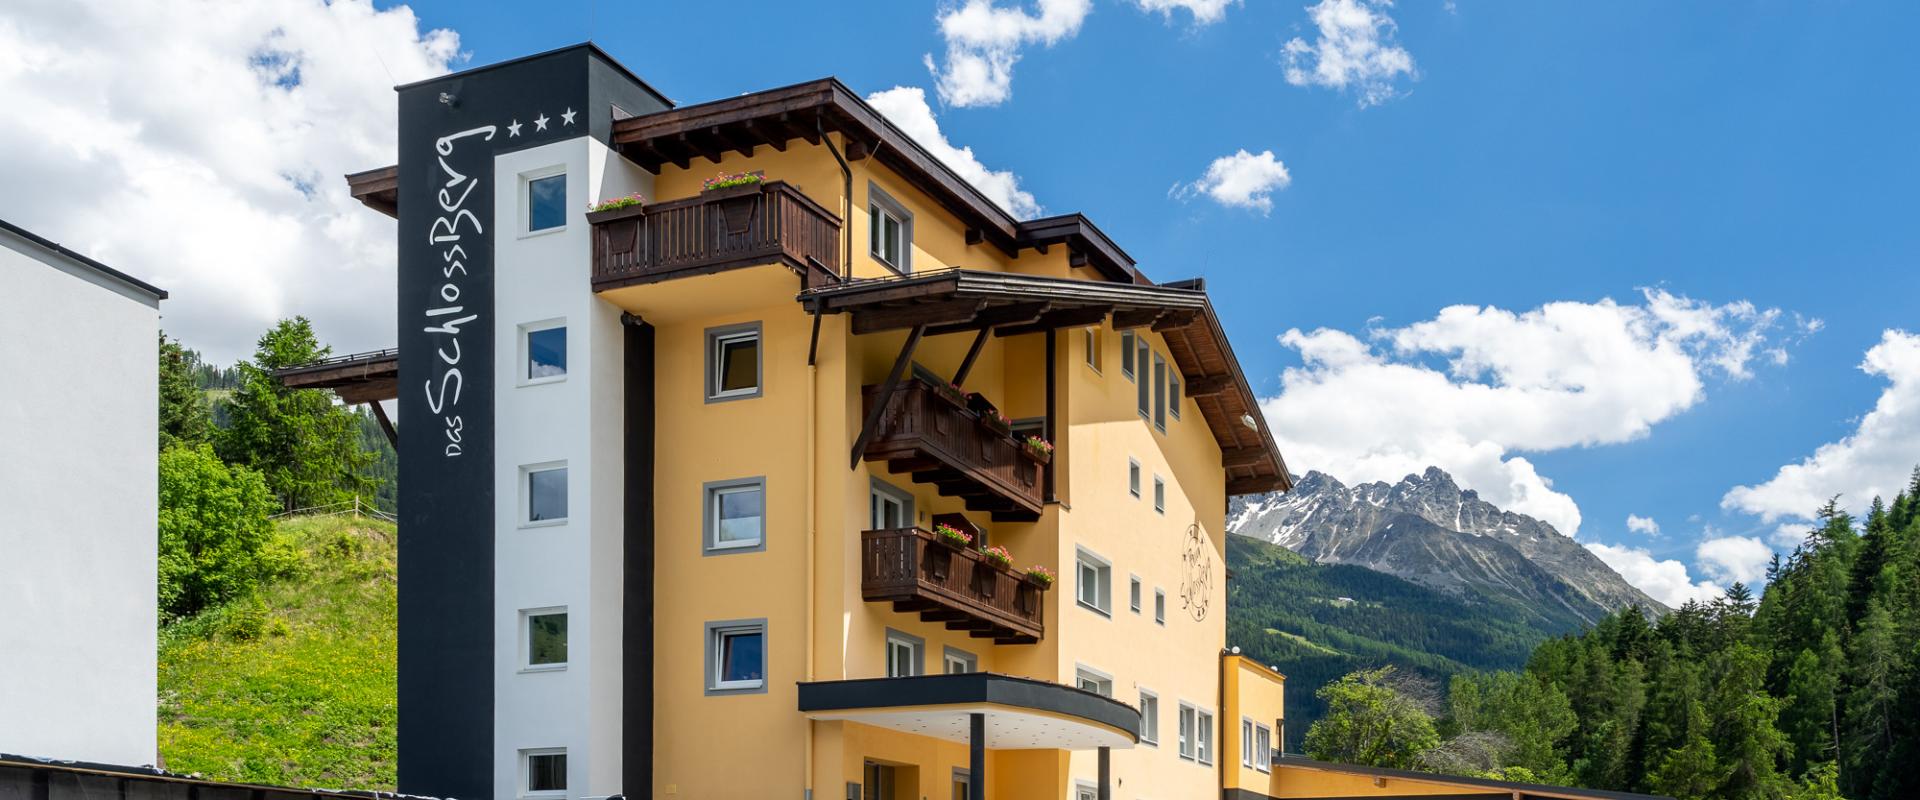 12226 Biker Hotel Schlossberg in Tirol.jpg